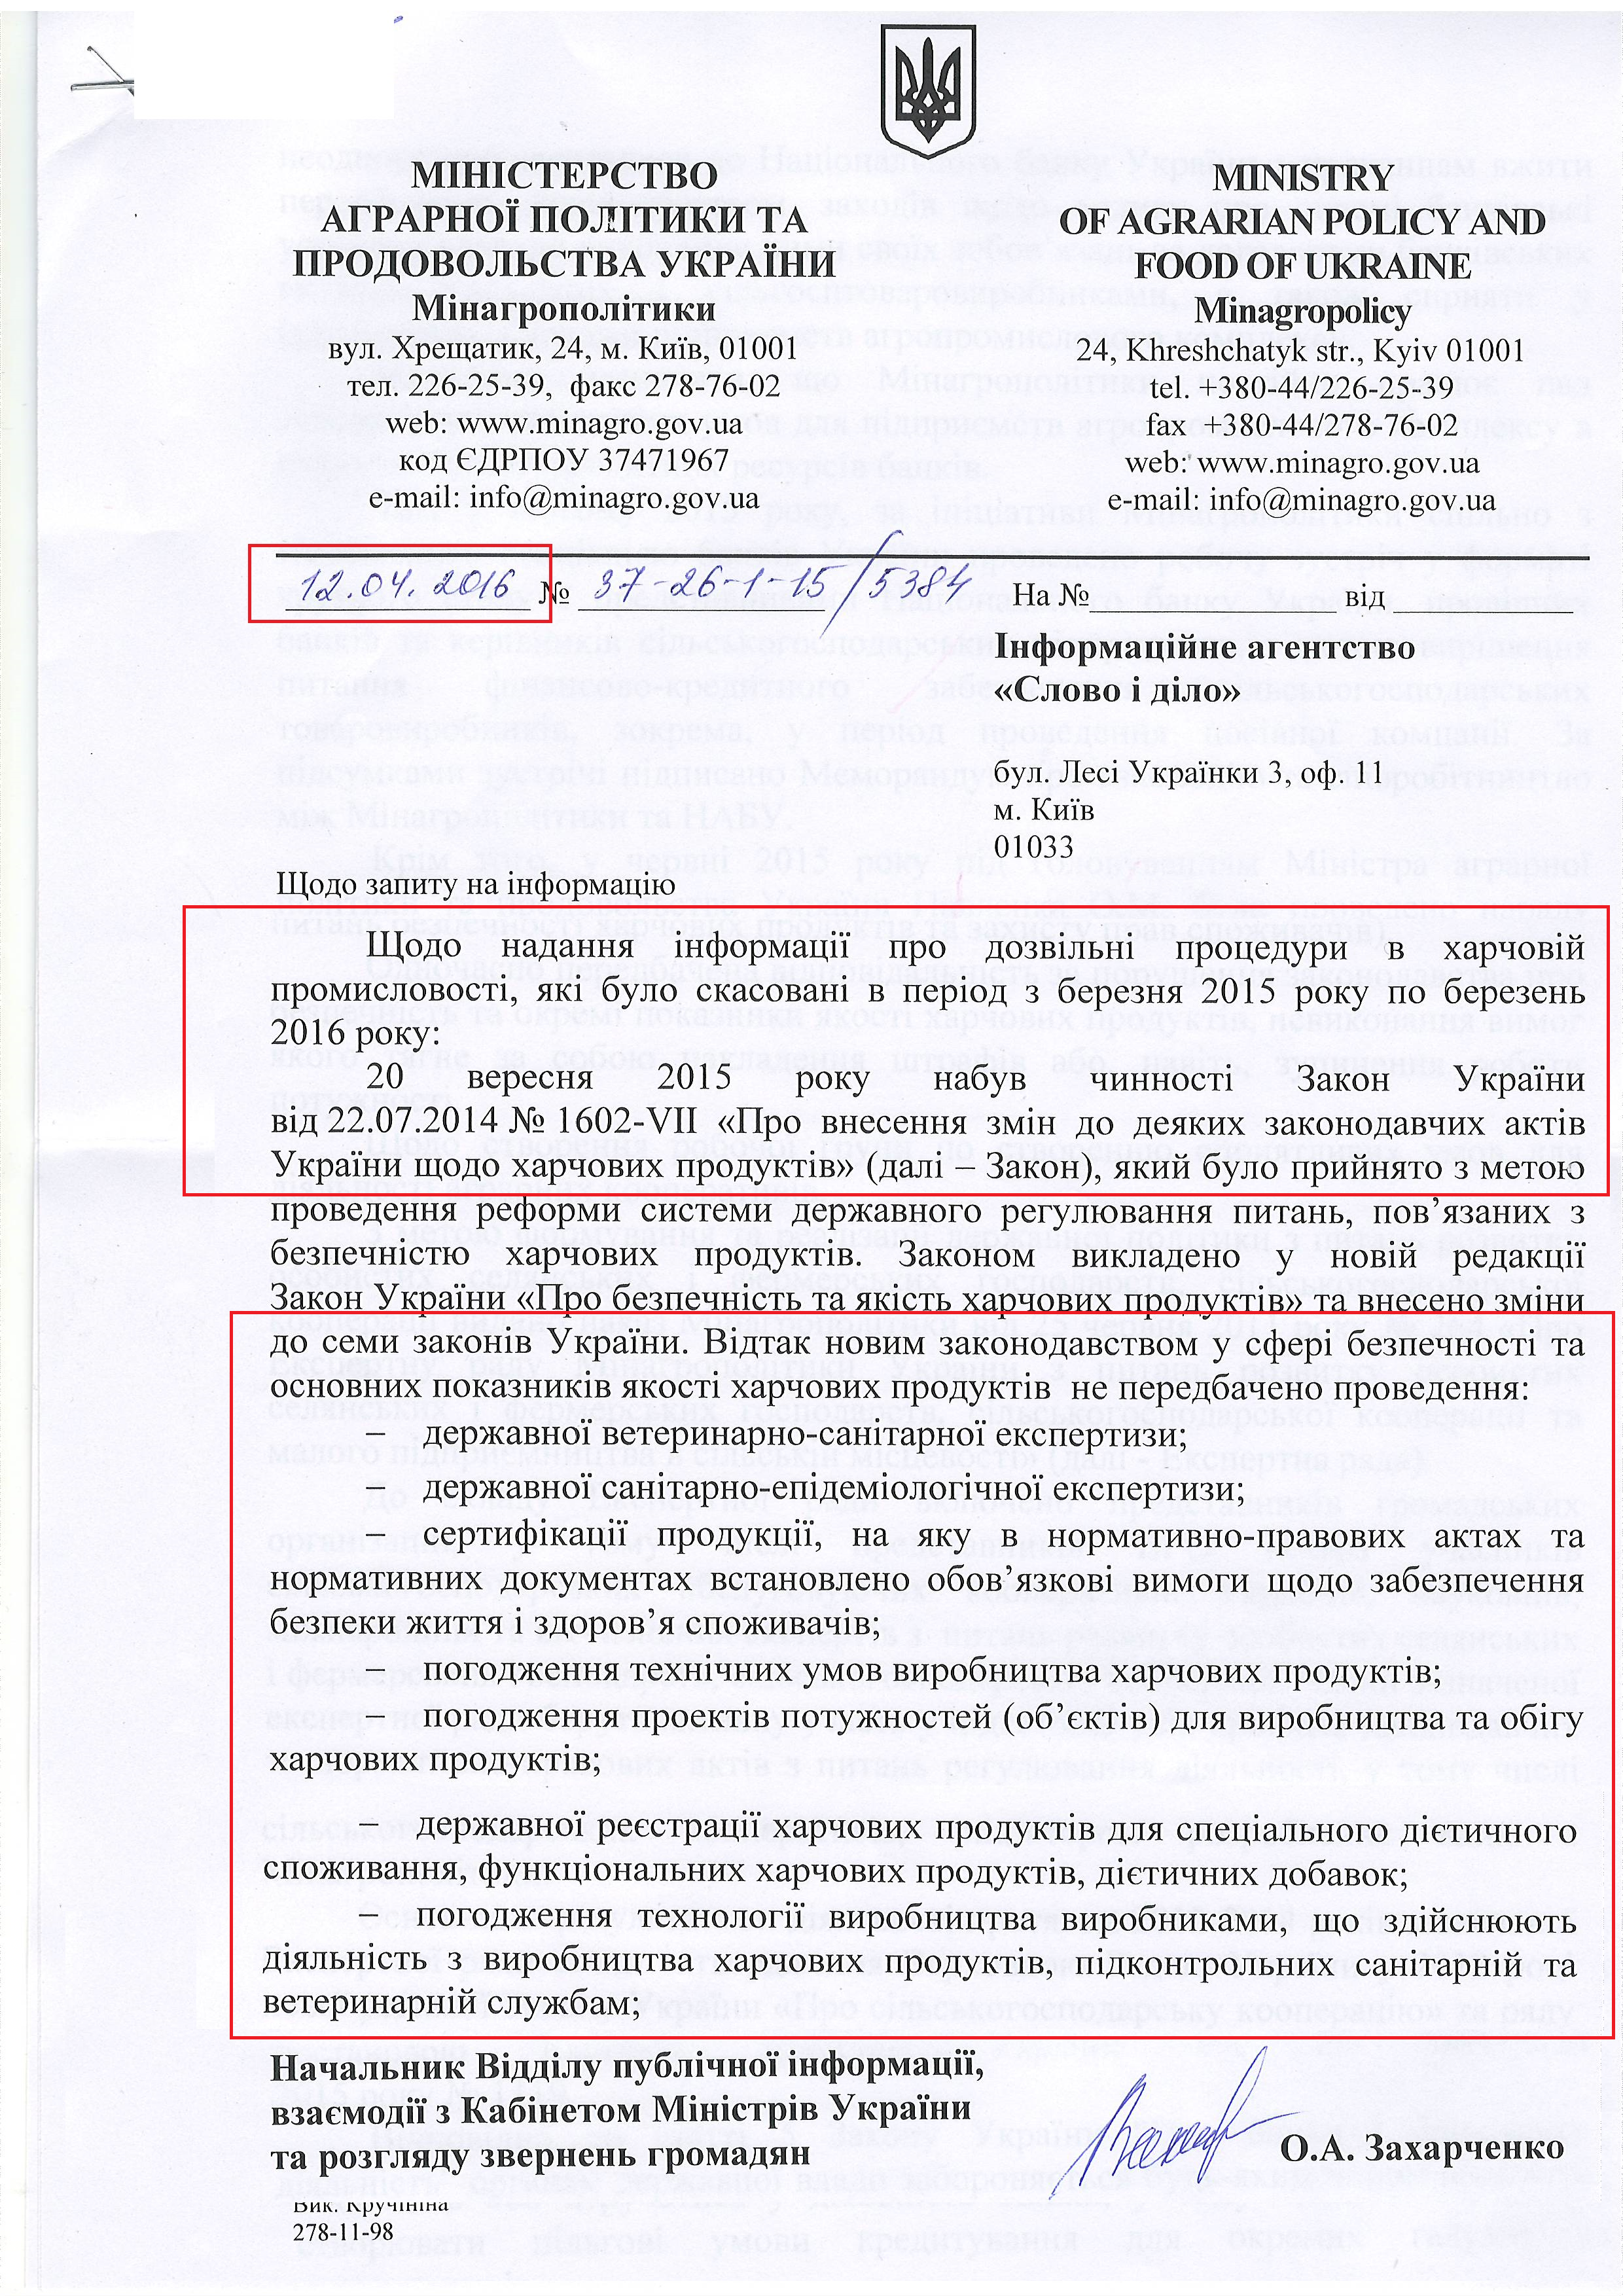 Лист міністерства аграрної політики та продовольства України від 12 квітня 2016 року